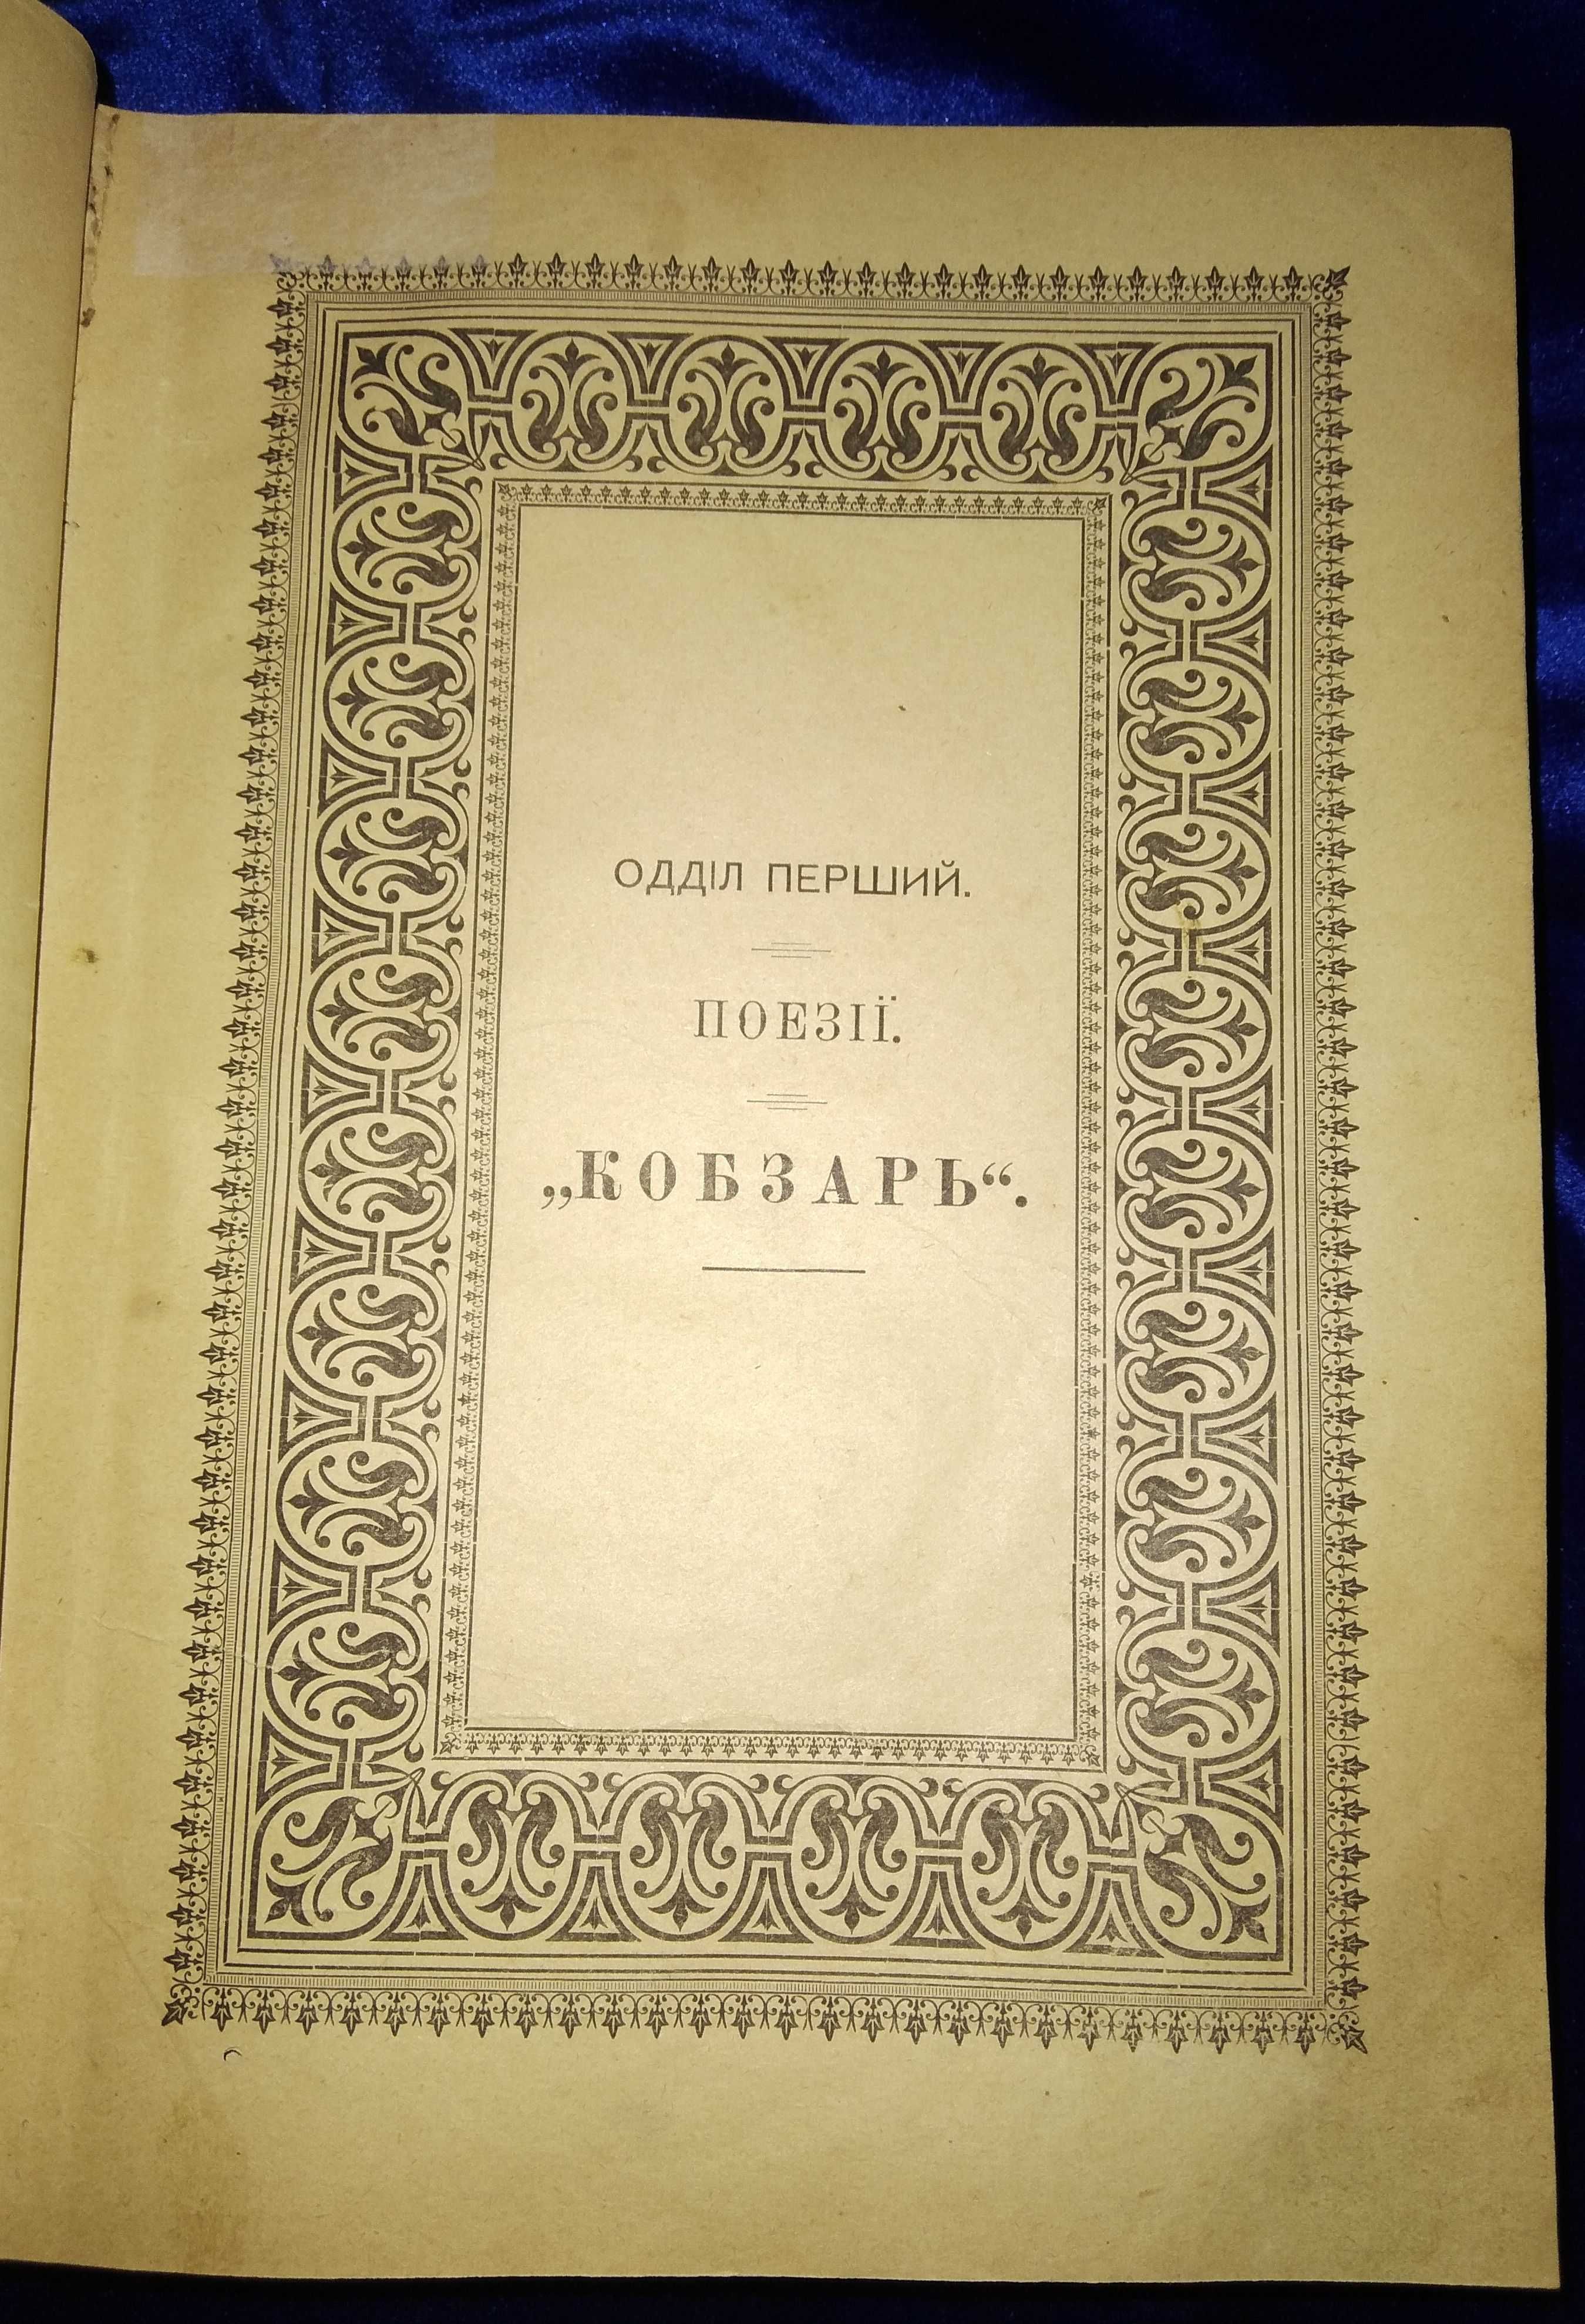 Повний збірник творів Т. Г. Шевченка 1914 року. Перше видання.